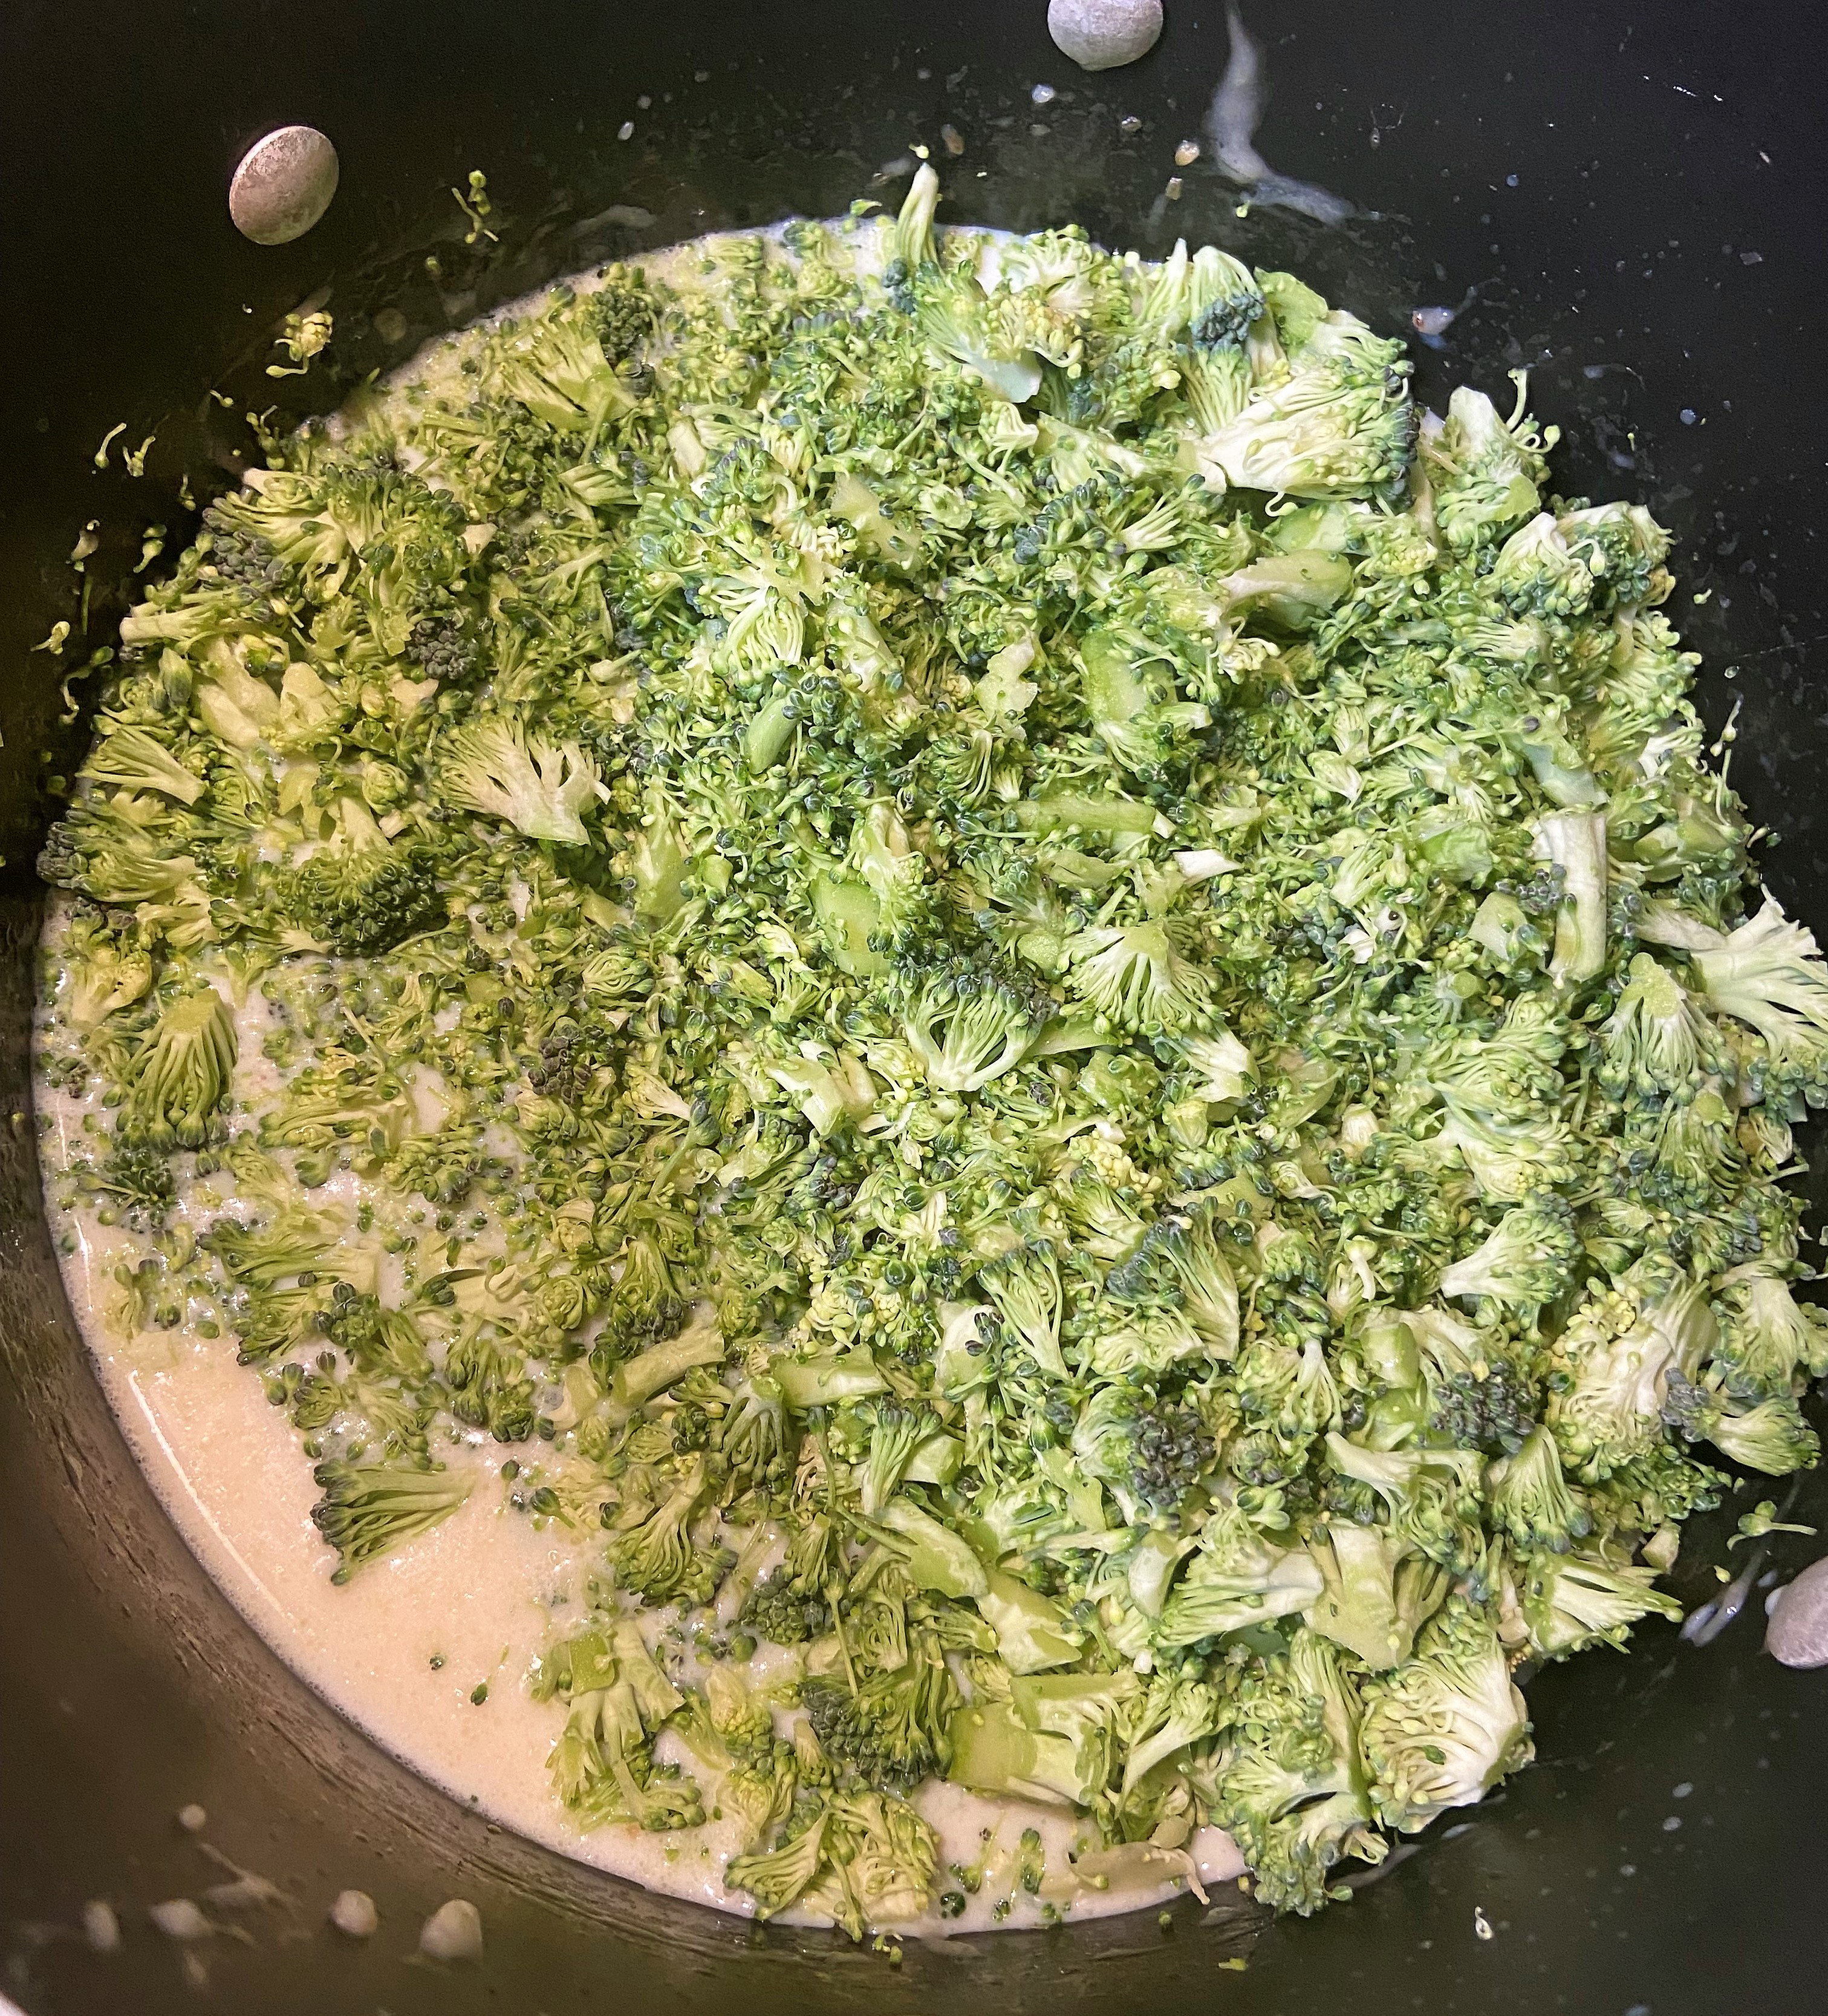 add chopped broccoli